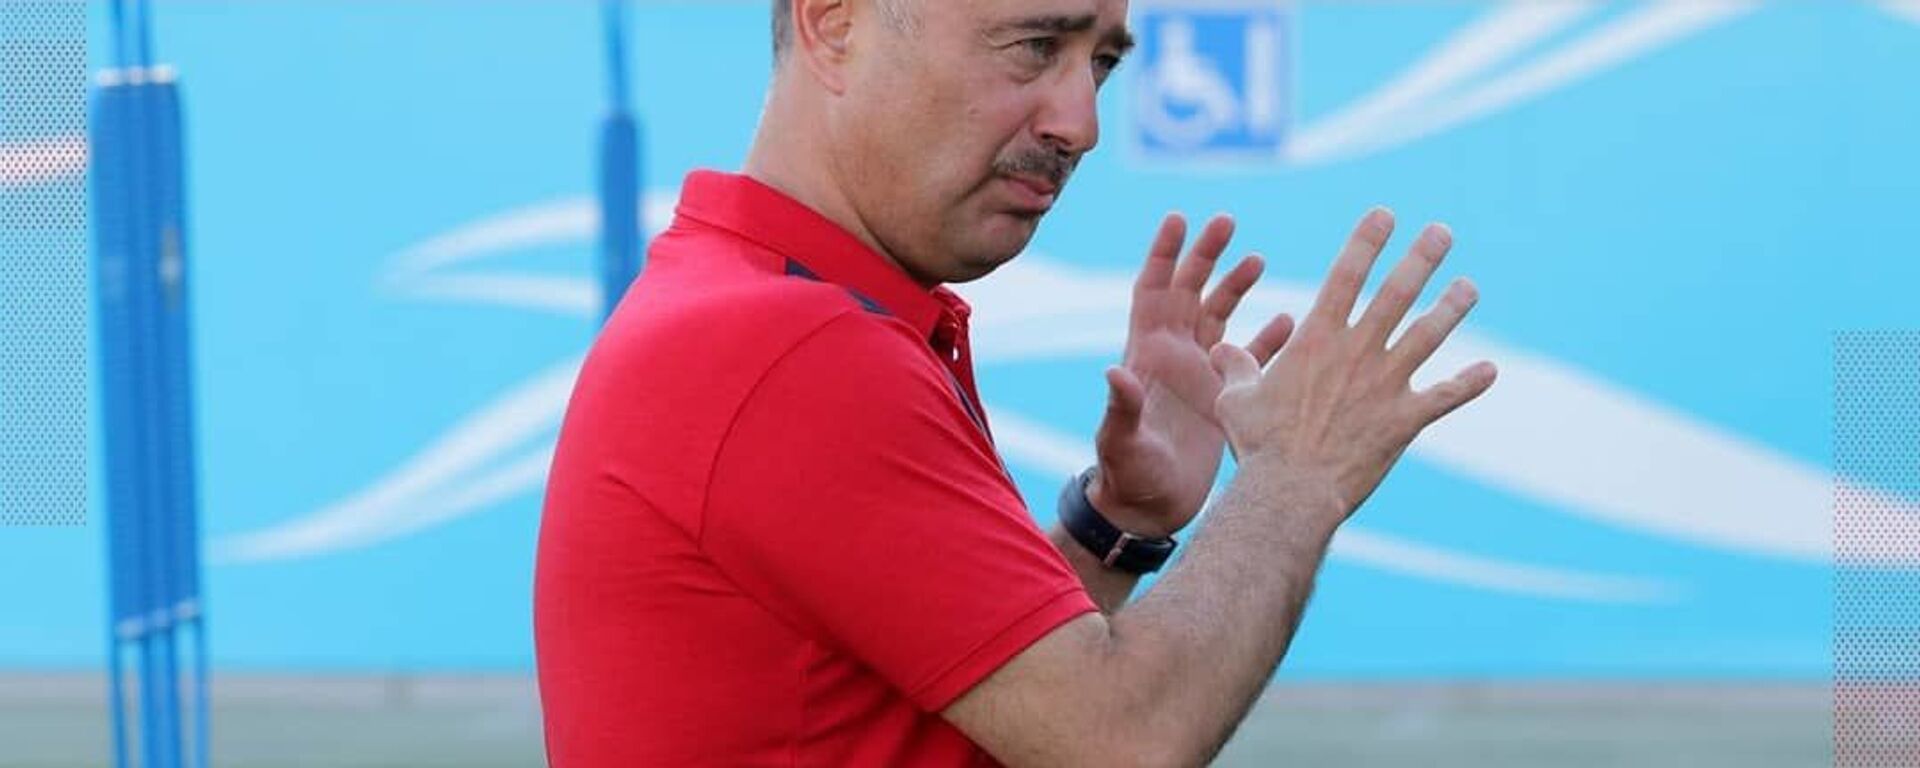 Бабаян официально представлен в качестве главного тренера Локомотива - Sputnik Ўзбекистон, 1920, 24.06.2019